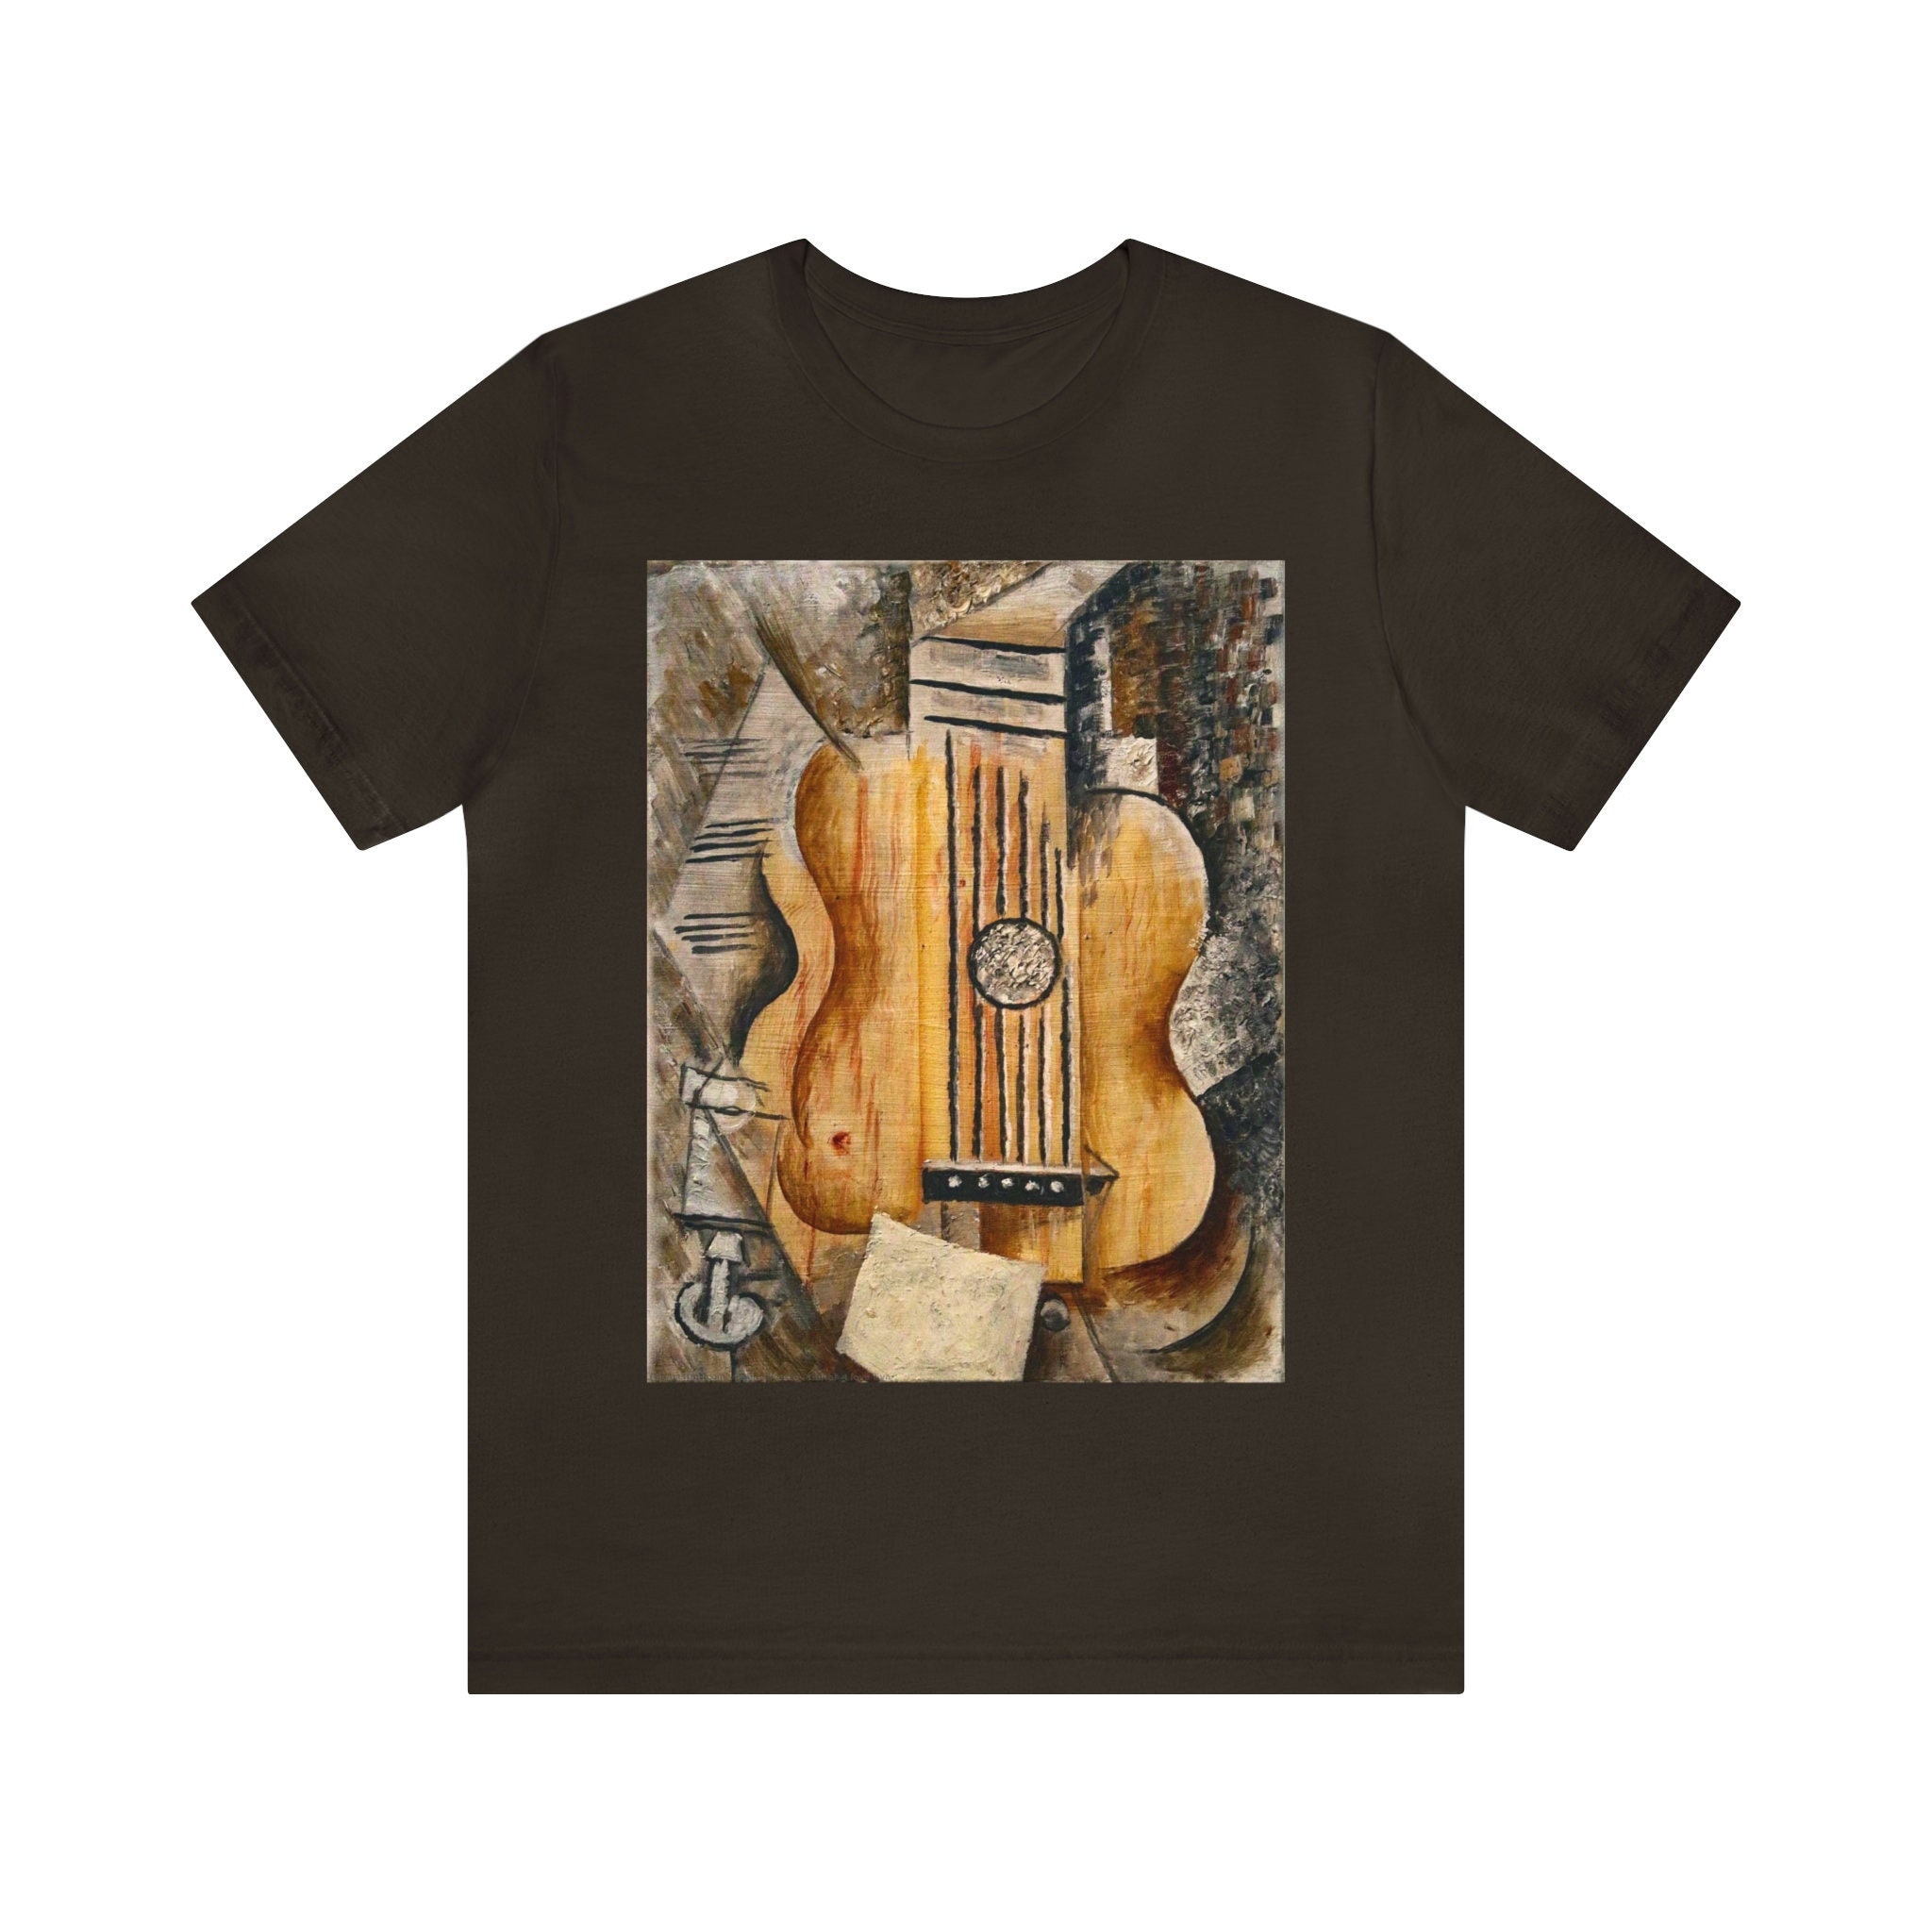 Pablo Picasso - Guitar, I love Eva 1912 T-Shirt